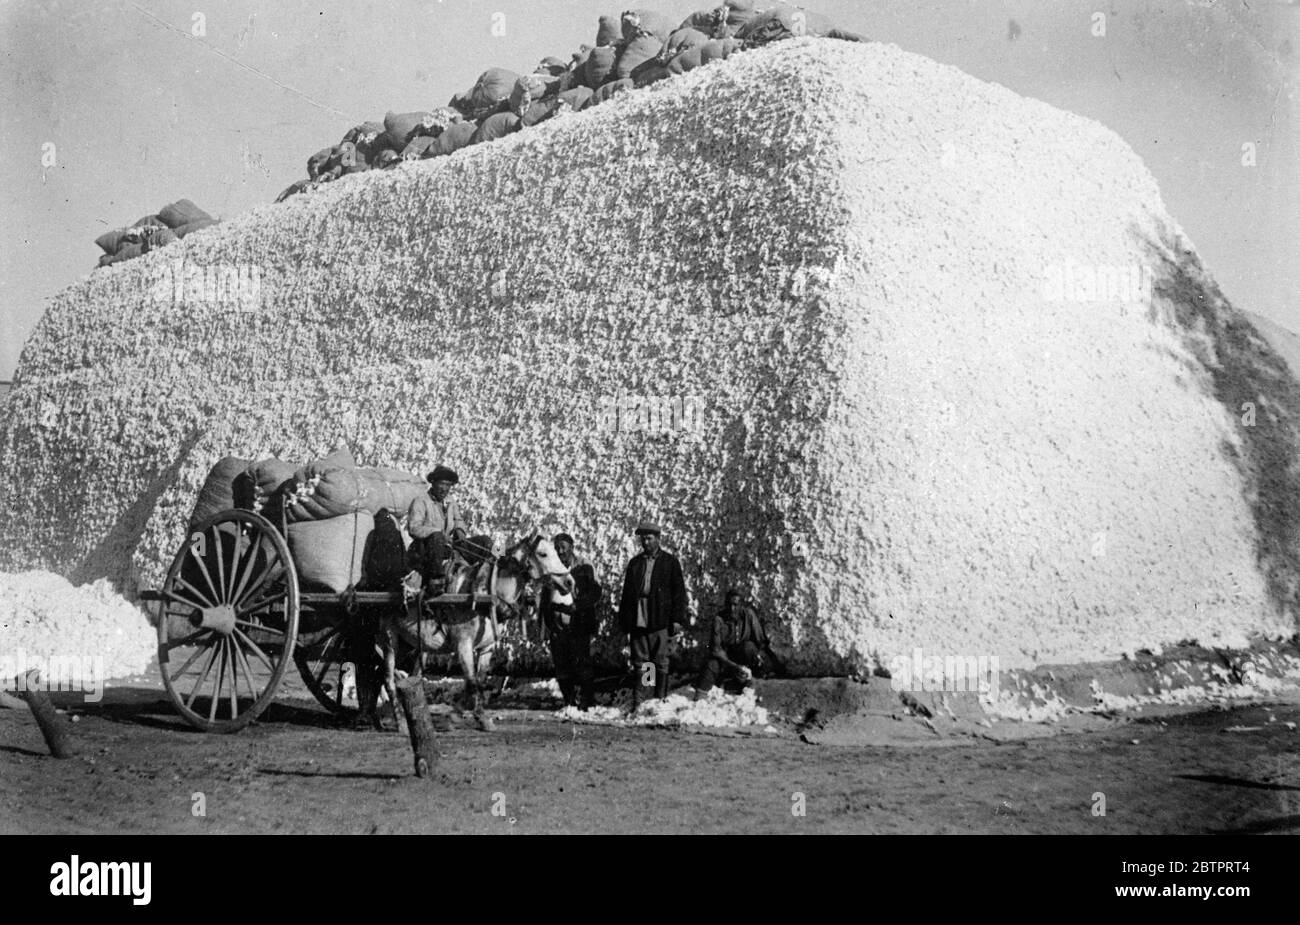 Ein Berg, der wuchs!. Weißer 'Berg' aus Baumwolle, der so etwas wie riesige Kreideblöcke aussieht, erhebt sich vom Boden am Sammelpunkt des Tischtepa-Kollektivbauernhofs im Kalinin-Distrikt der usbekischen Sozialistischen Sowjetrepublik. Hunderte Tonnen Baumwolle werden jeden Tag gesammelt. Foto zeigt einen soliden "Block" aus Baumwolle auf der Chash Tepa Collective Farm in Usbekistan. Dezember 1937 Stockfoto